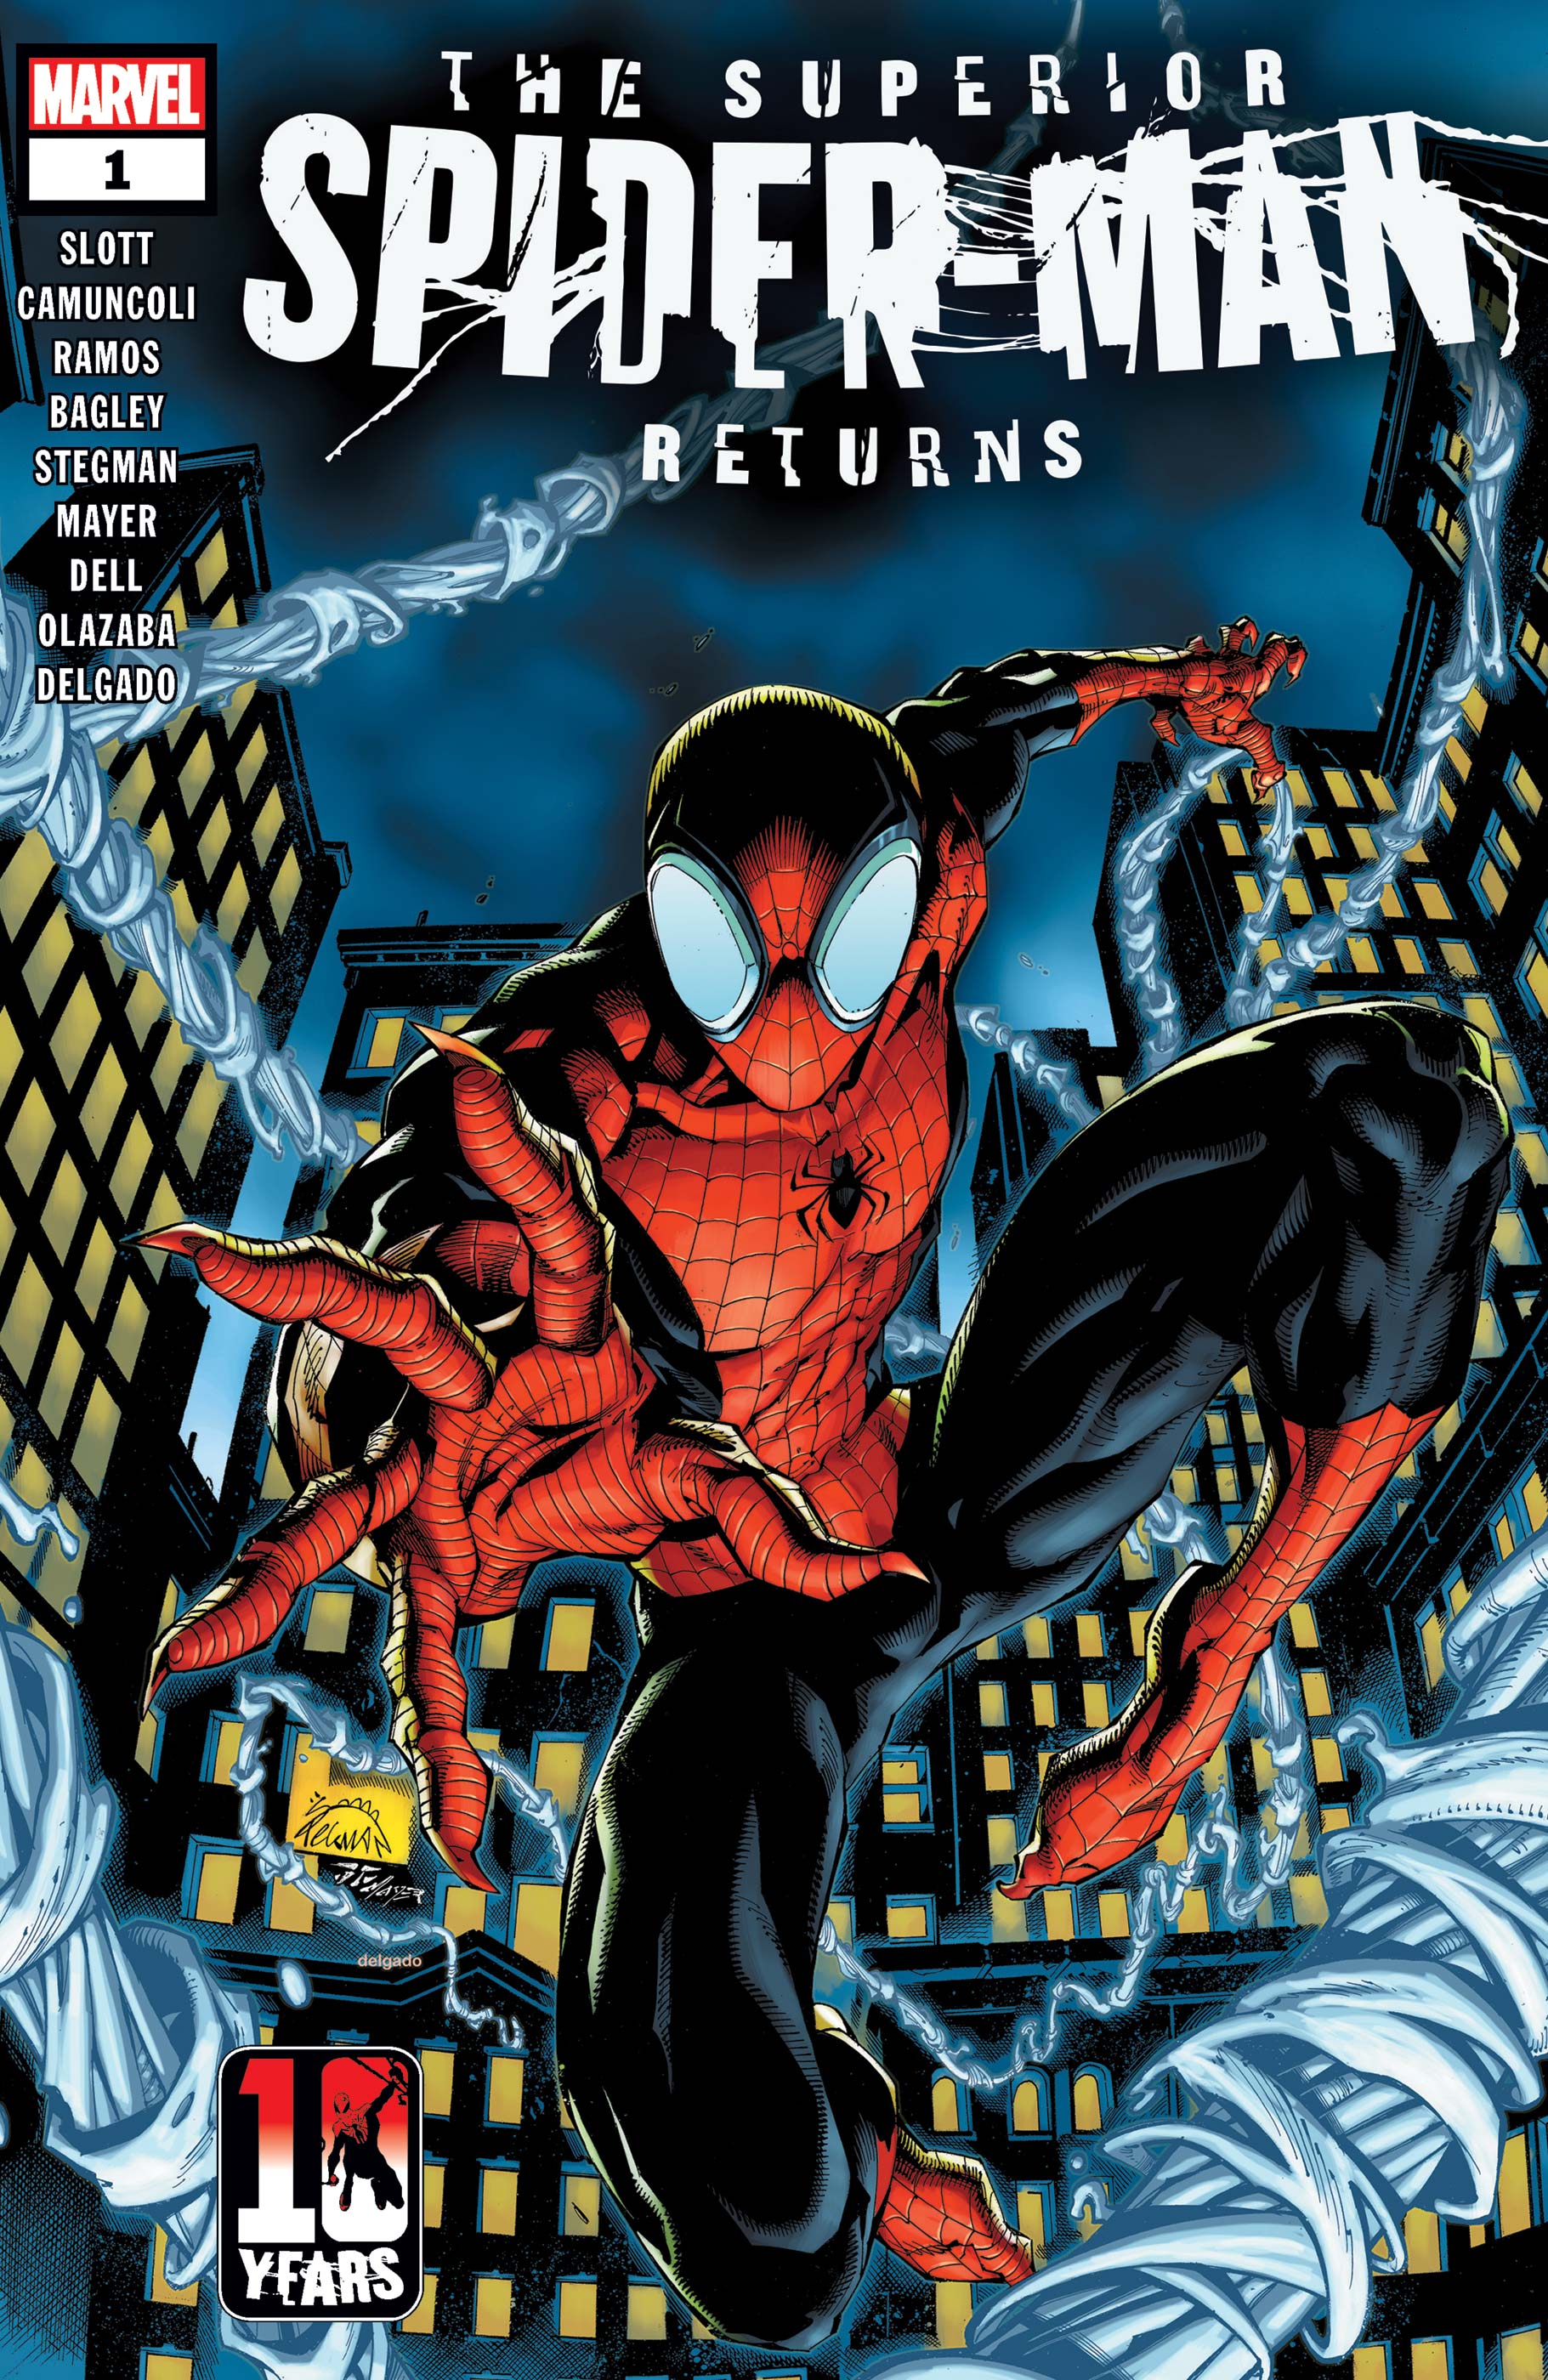 Couverture de The Superior Spider-Man Returns #1